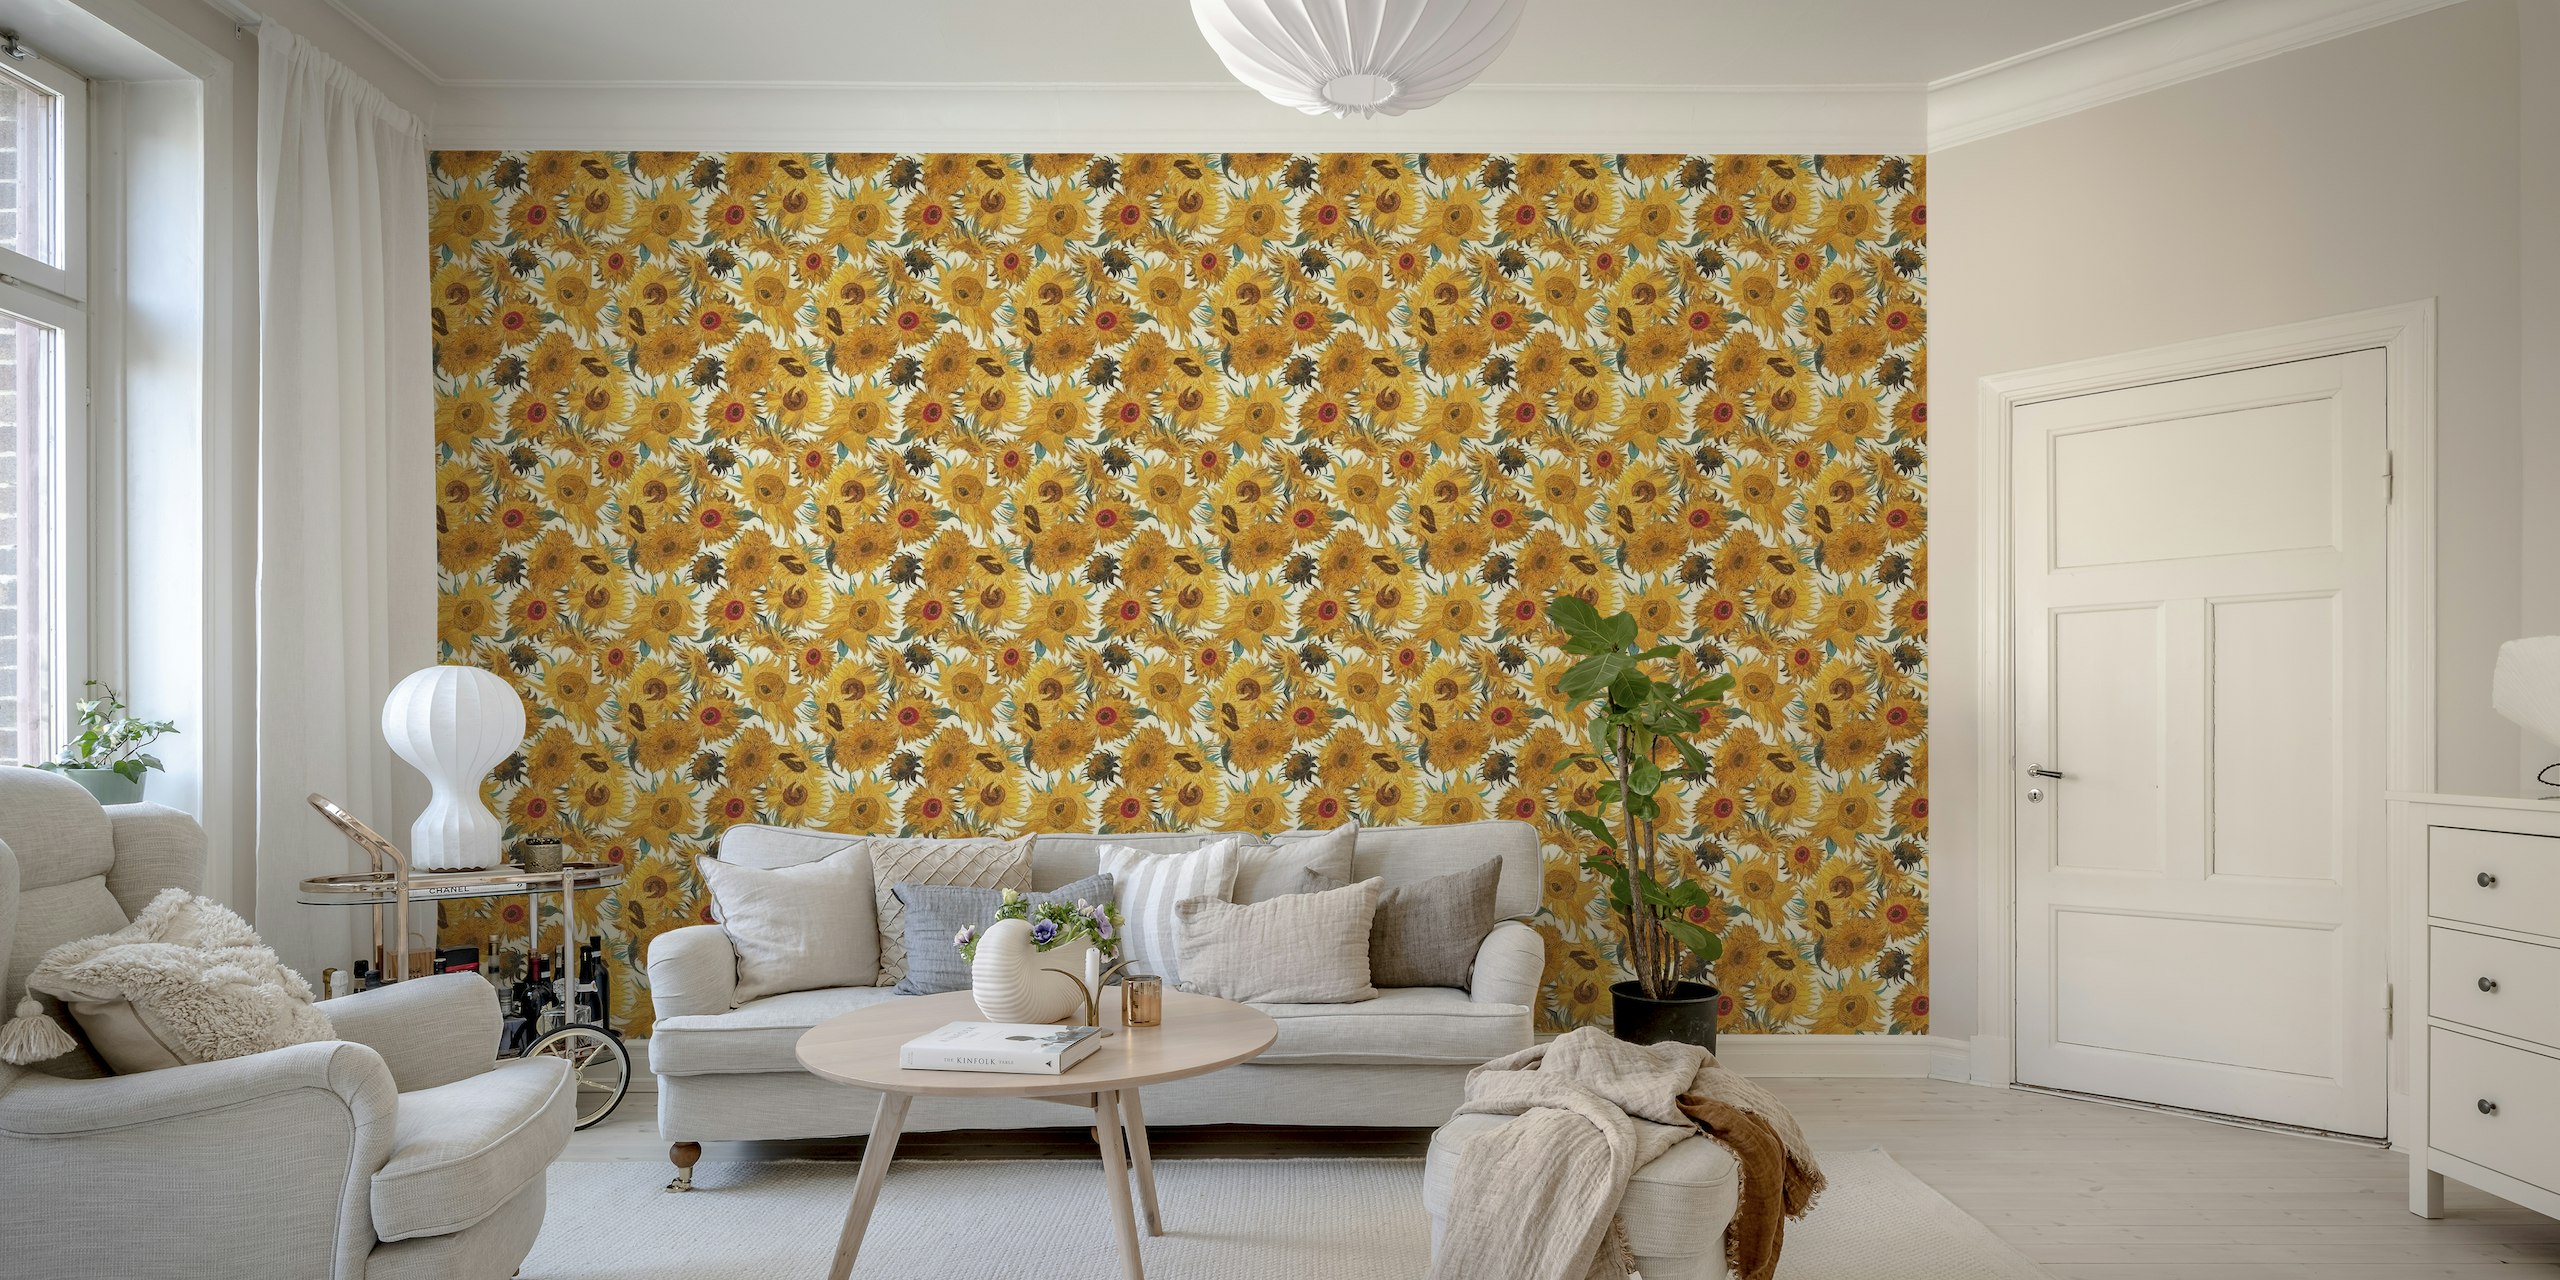 Von Van Gogh inspiriertes Wandbild mit Sonnenblumenmuster in Creme, Gelb, Aquamarin und Braun.